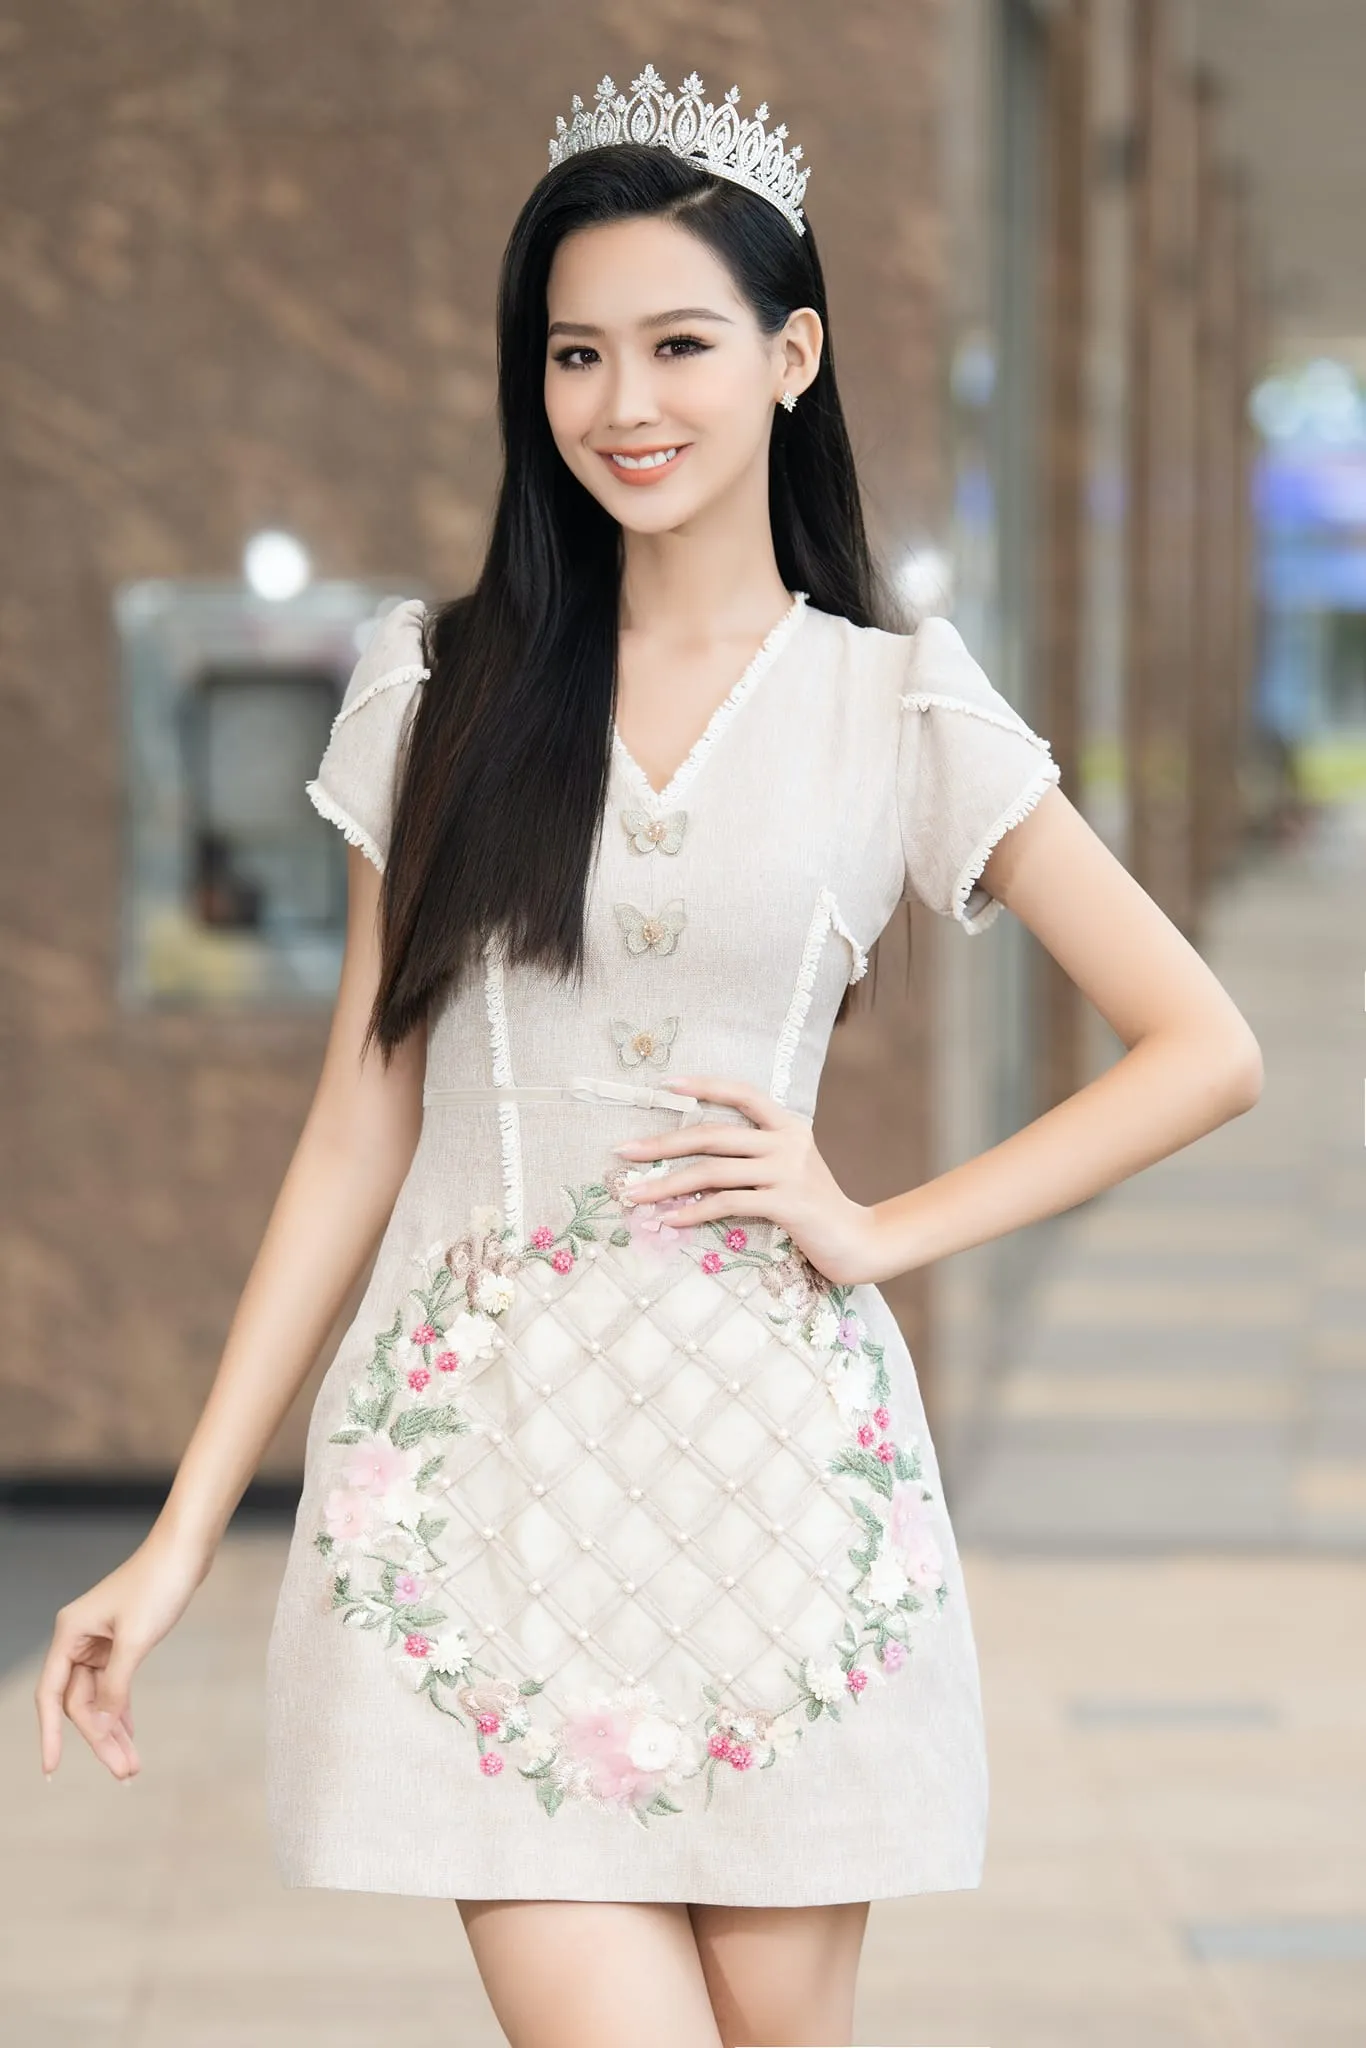 Hoa hậu Thùy Tiên phân trần khi gây tranh cãi kêu gọi từ thiện, hành động càng thêm chú ý 